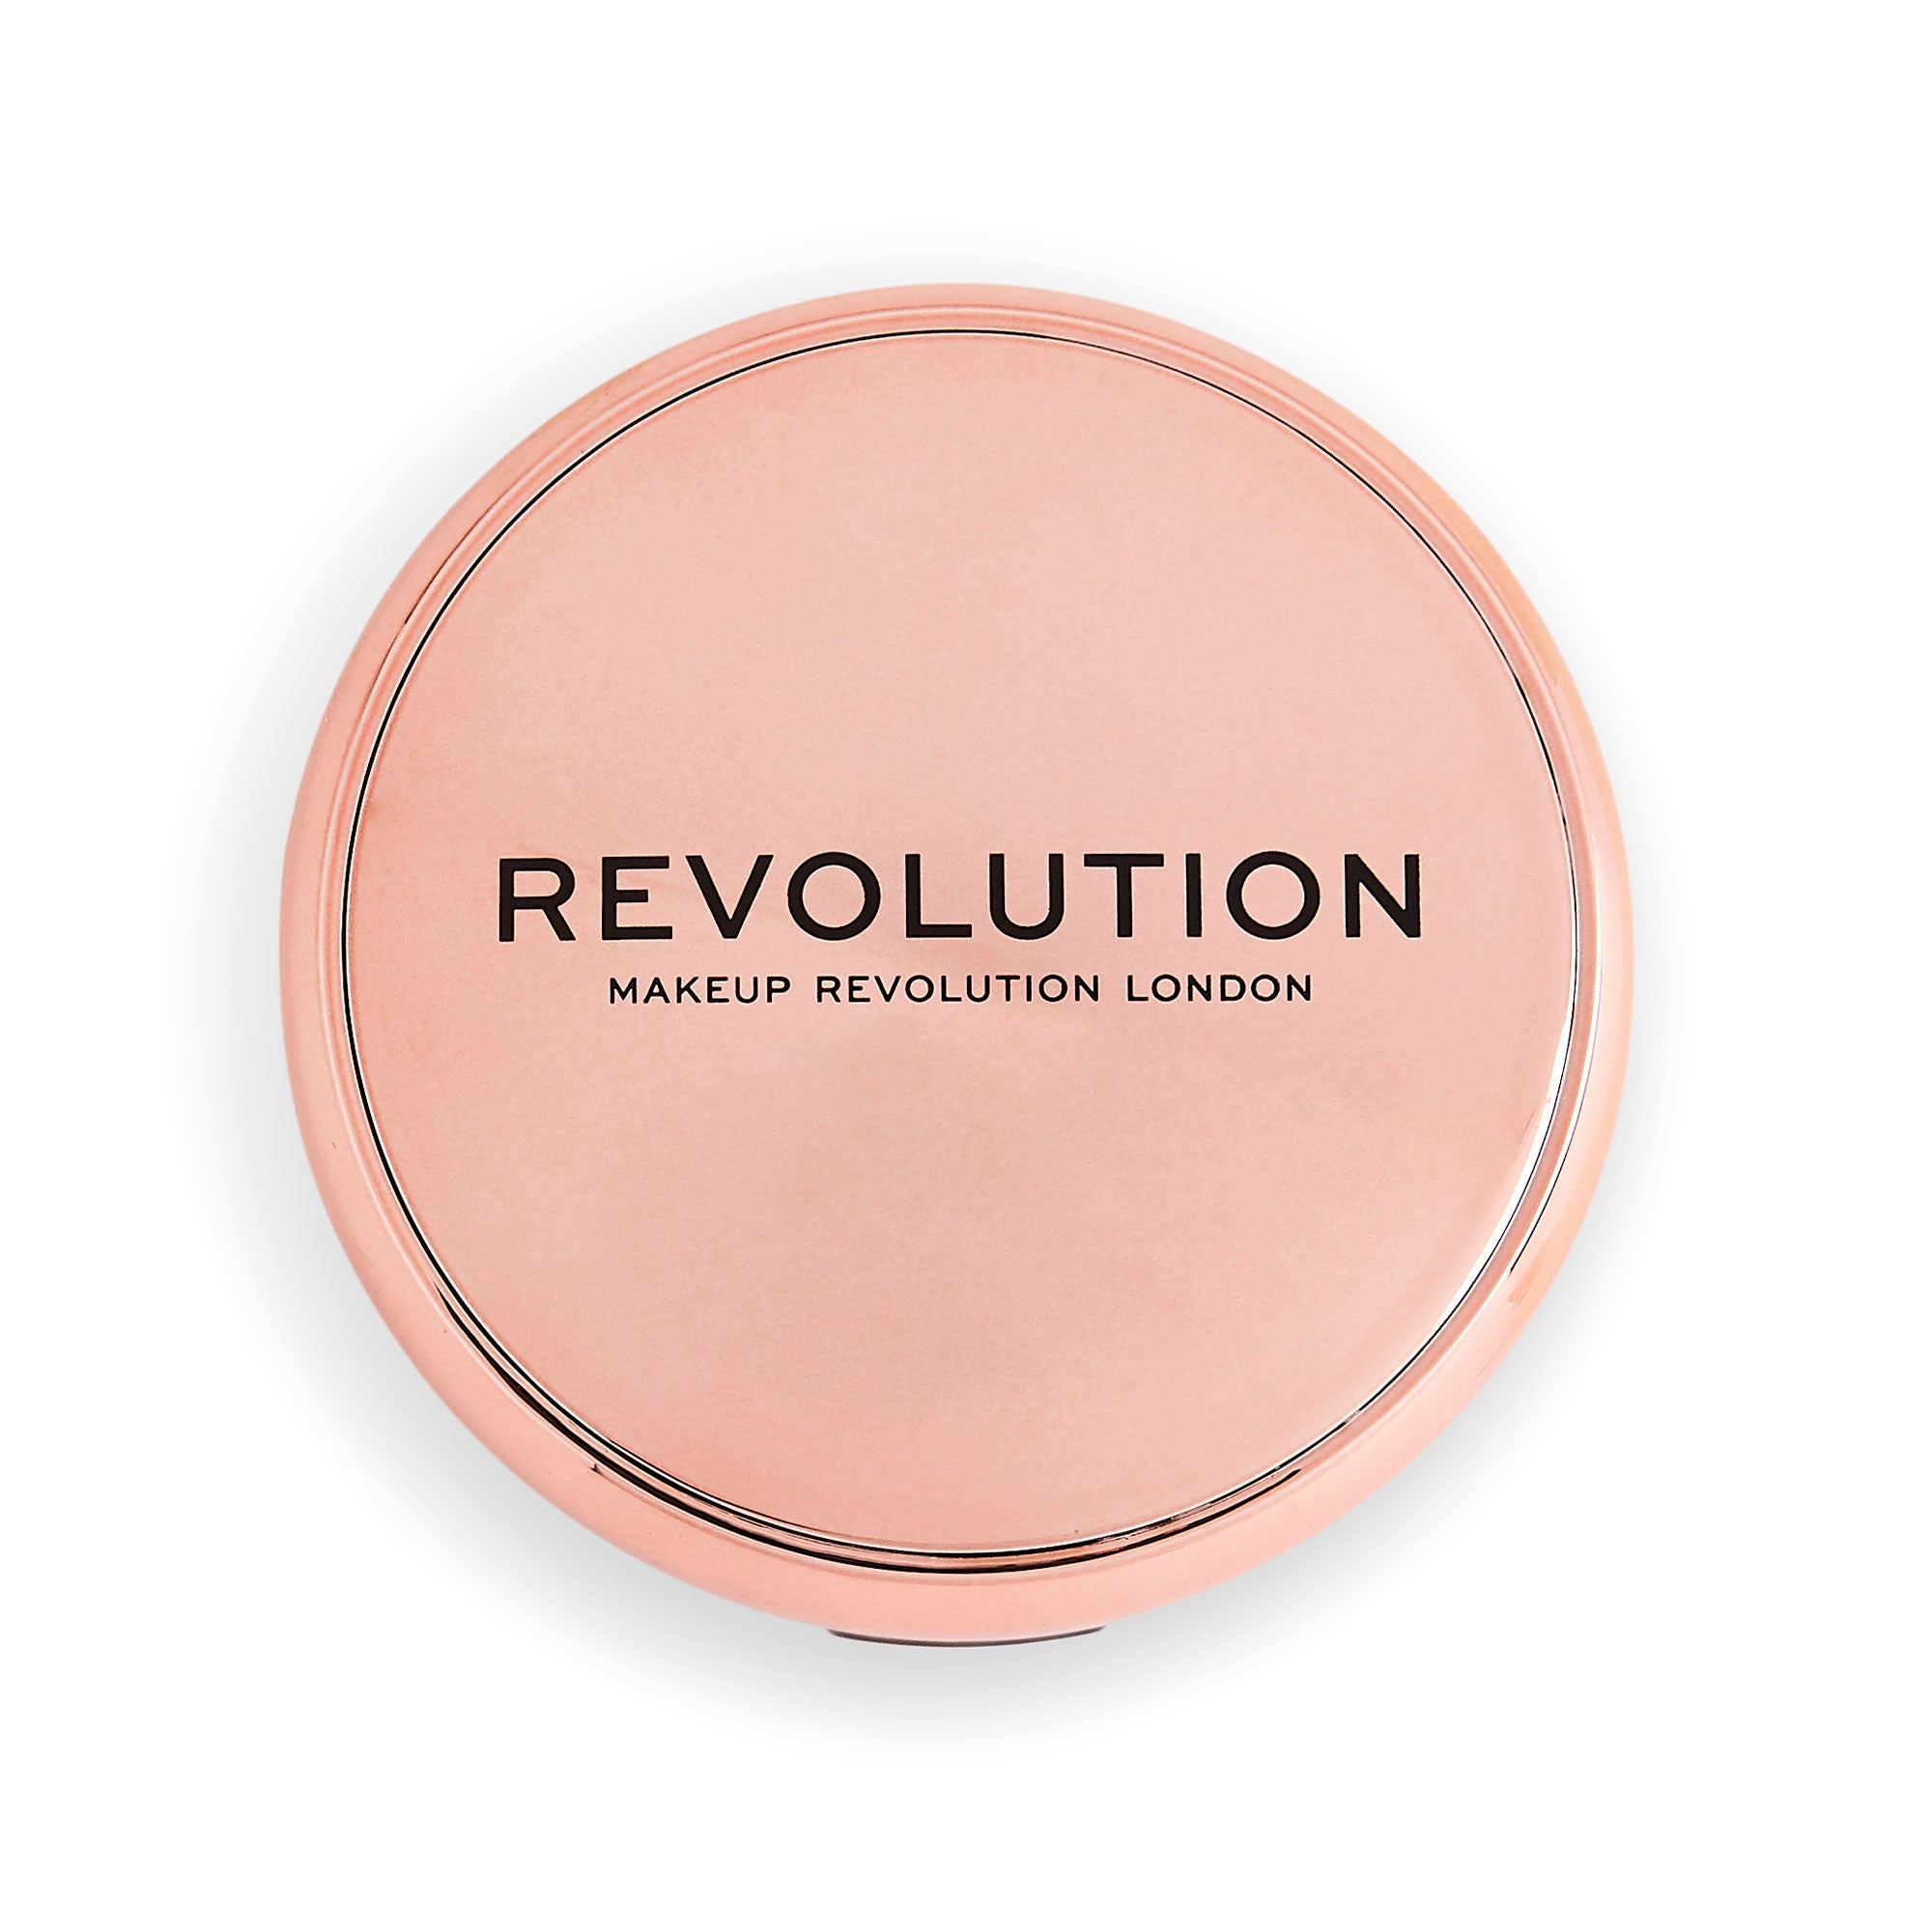 Makeup Revolution Face Powder Contour Compact Review 